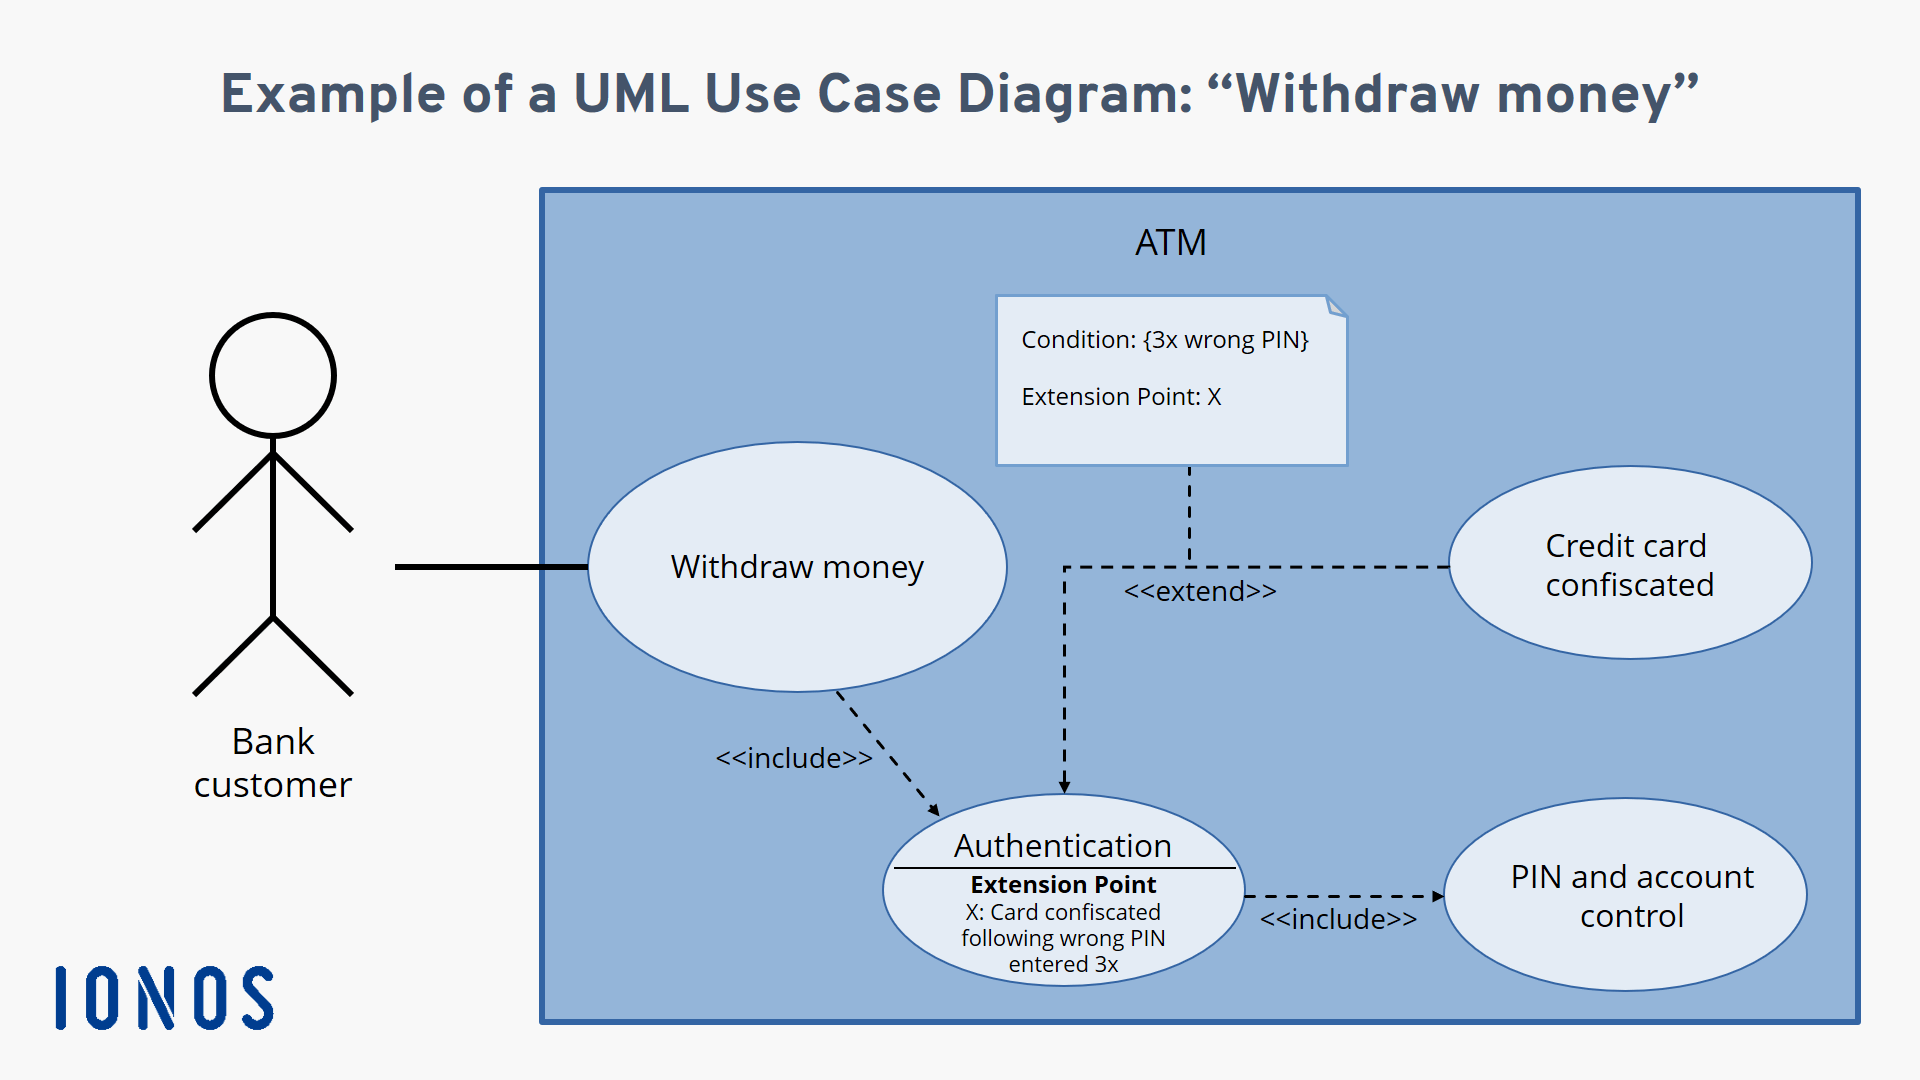 Diagrama de casos de uso: estructura y función